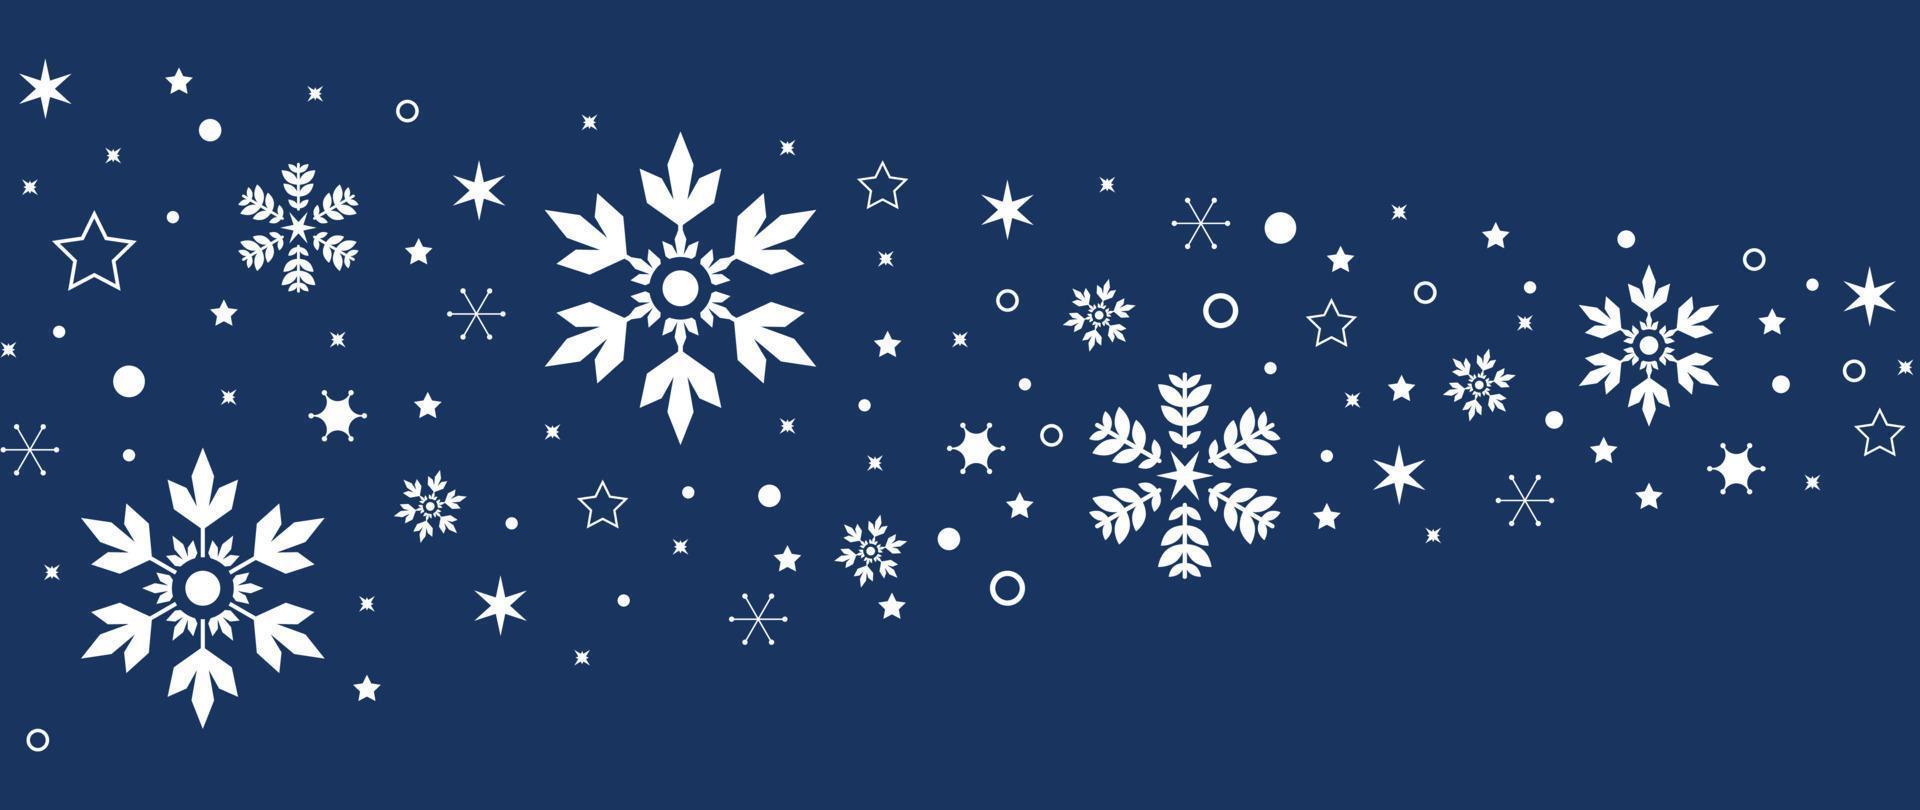 vetor de fundo do conceito de natal e feliz ano novo. elegantes elementos decorativos de natal branco de floco de neve, estrela, neve sobre fundo azul. ilustração de design para papel de parede, cartão, capa, pôster.